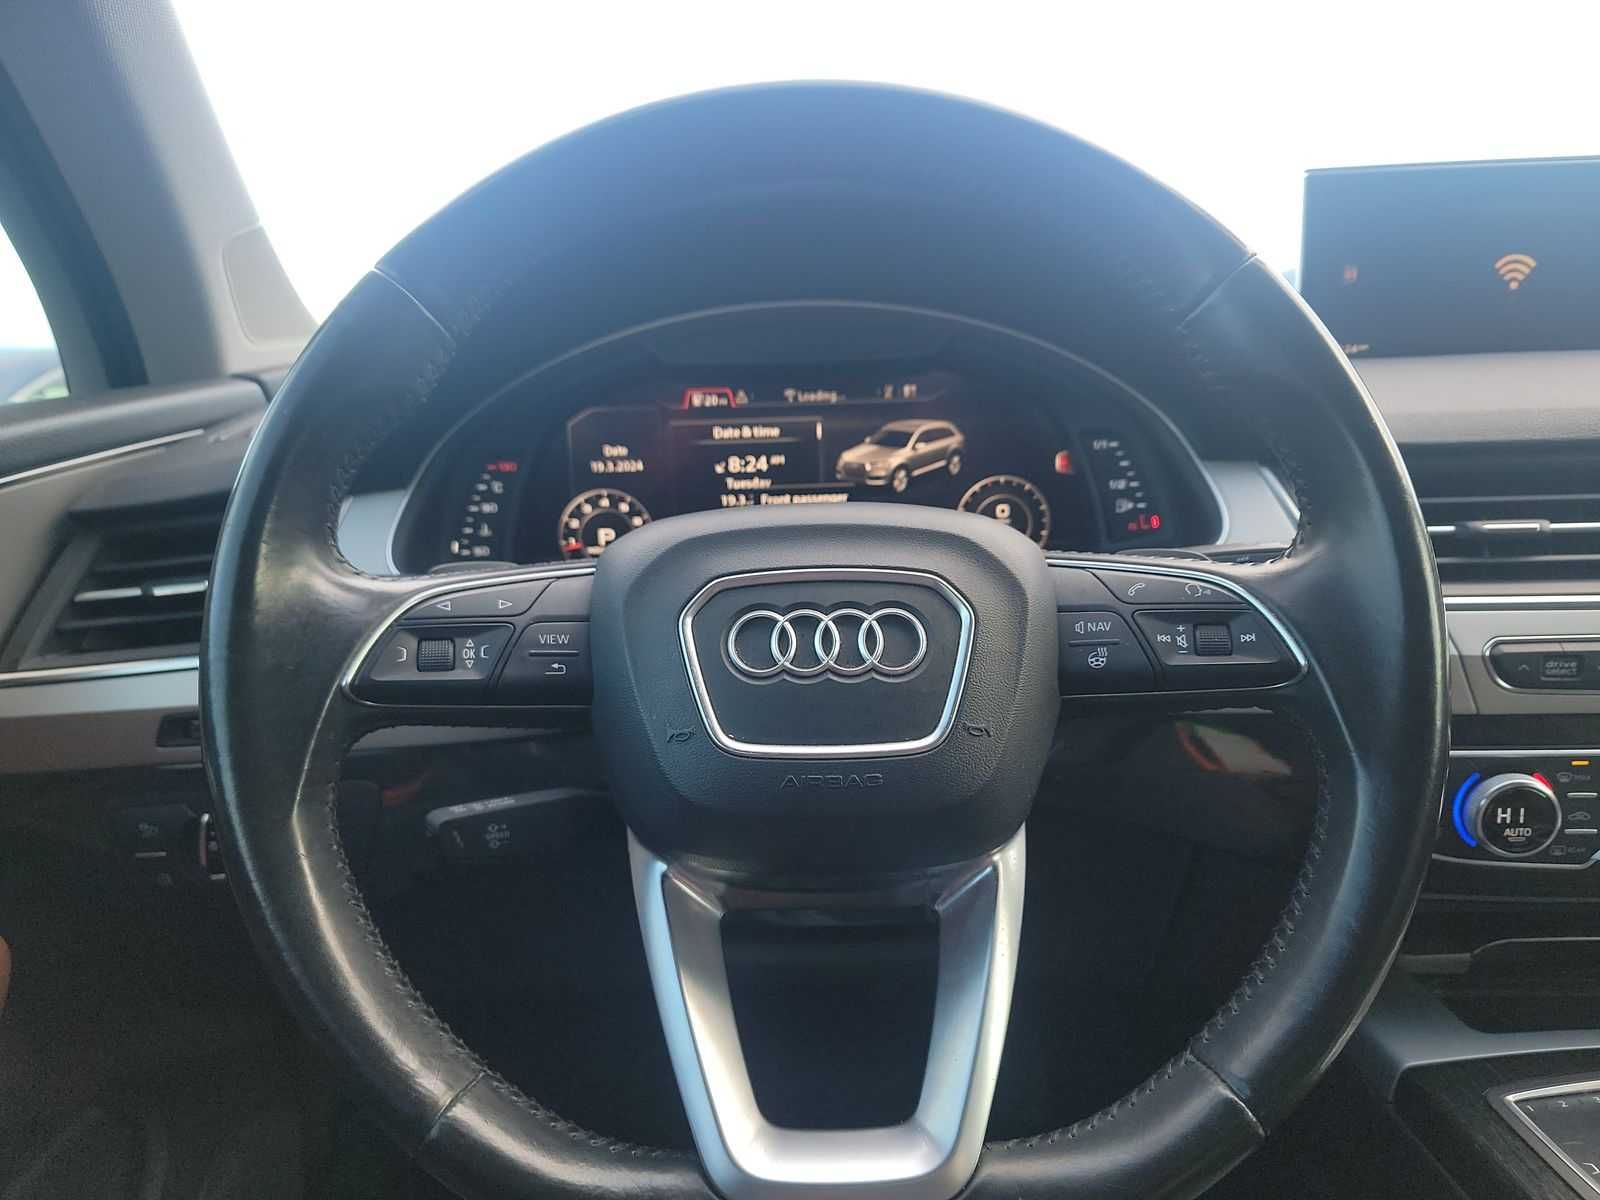 Audi Q7 2017 Quattro